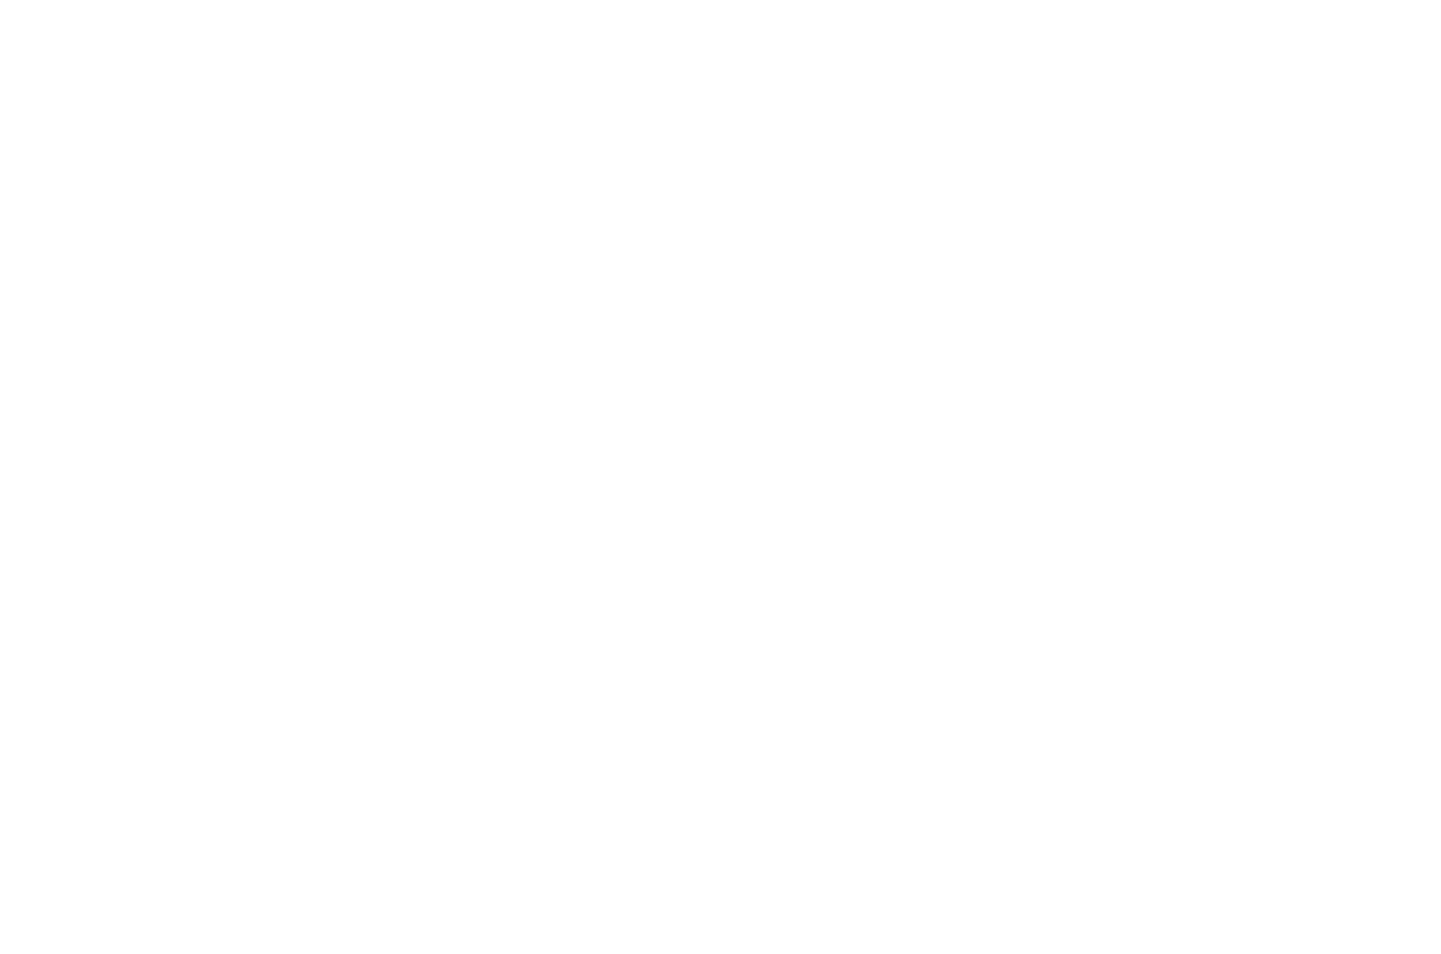 E golfer mericano, Tiger Woods, a sufri un accidente di auto dia 23 di februari na Los Angeles  Woods mester a wordo    